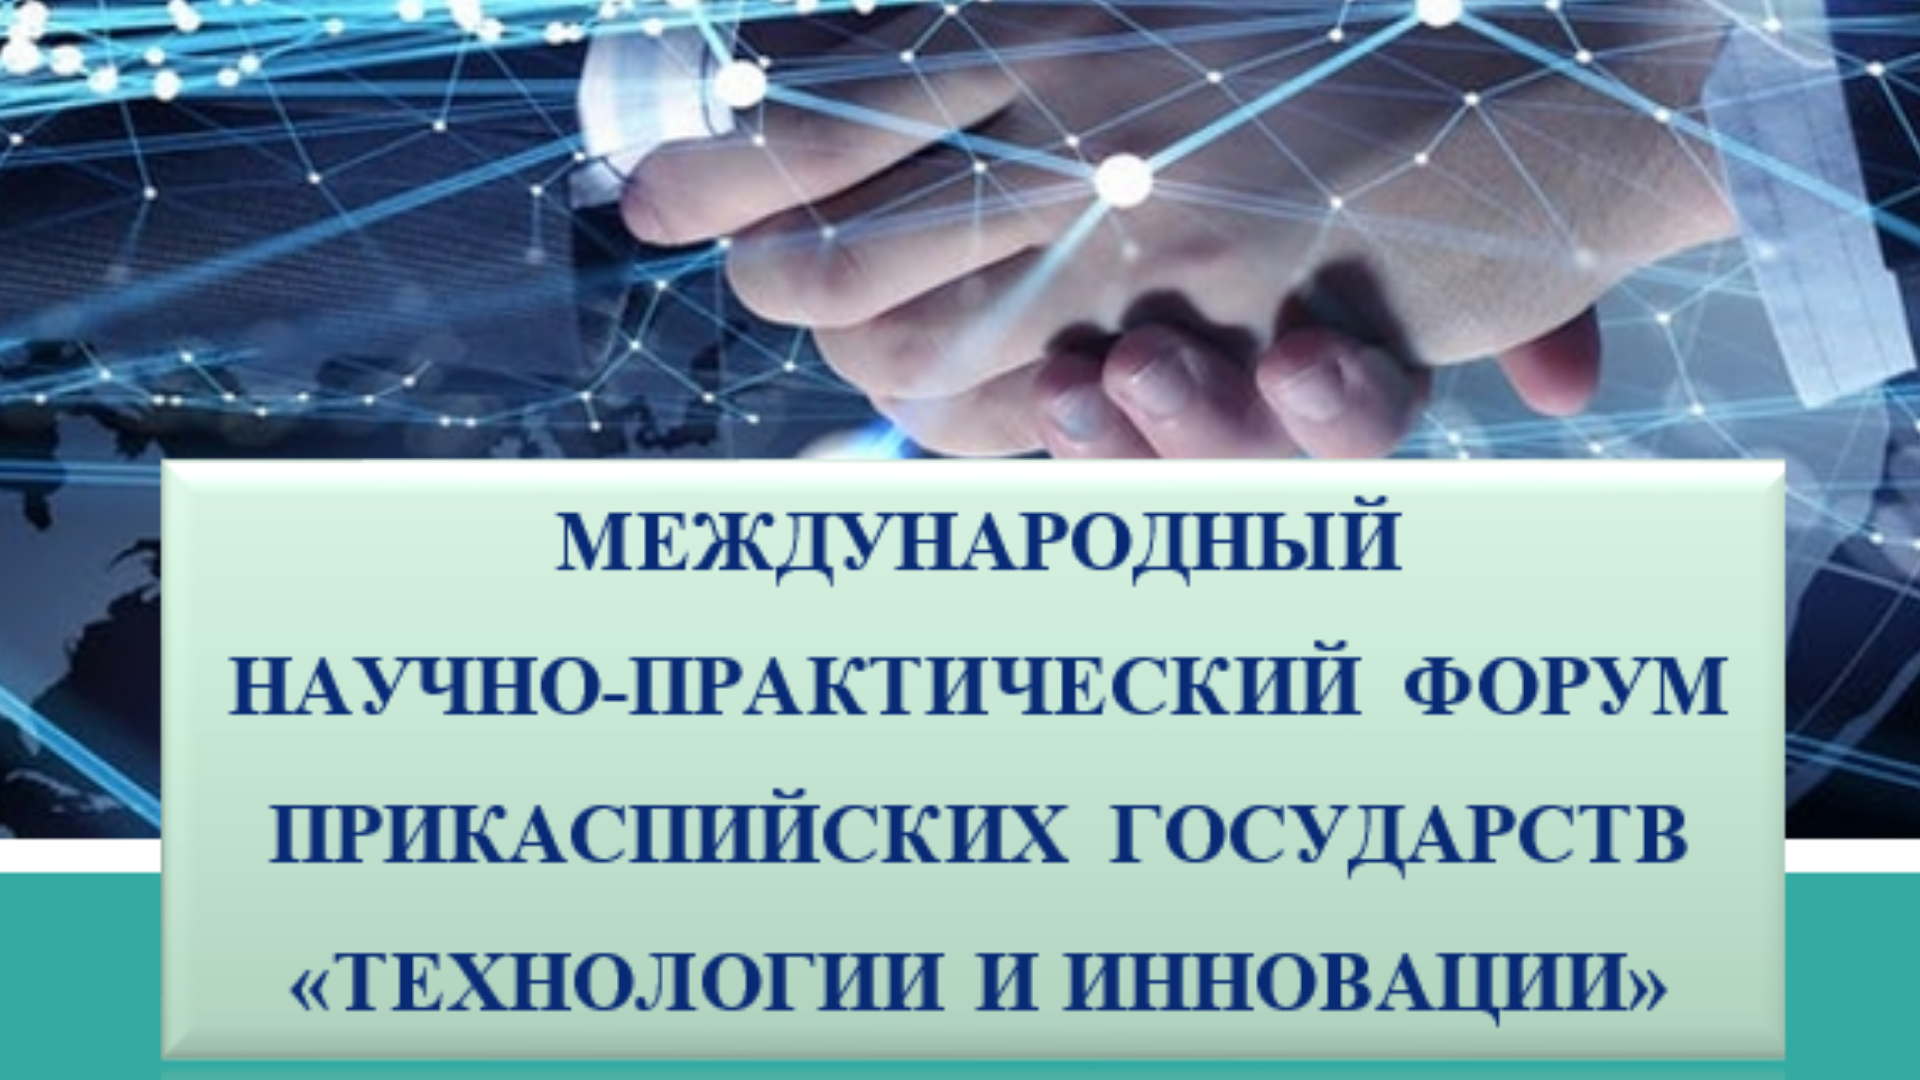 Международный научно-практический форум Прикаспийских государств «Технологии и инновации»